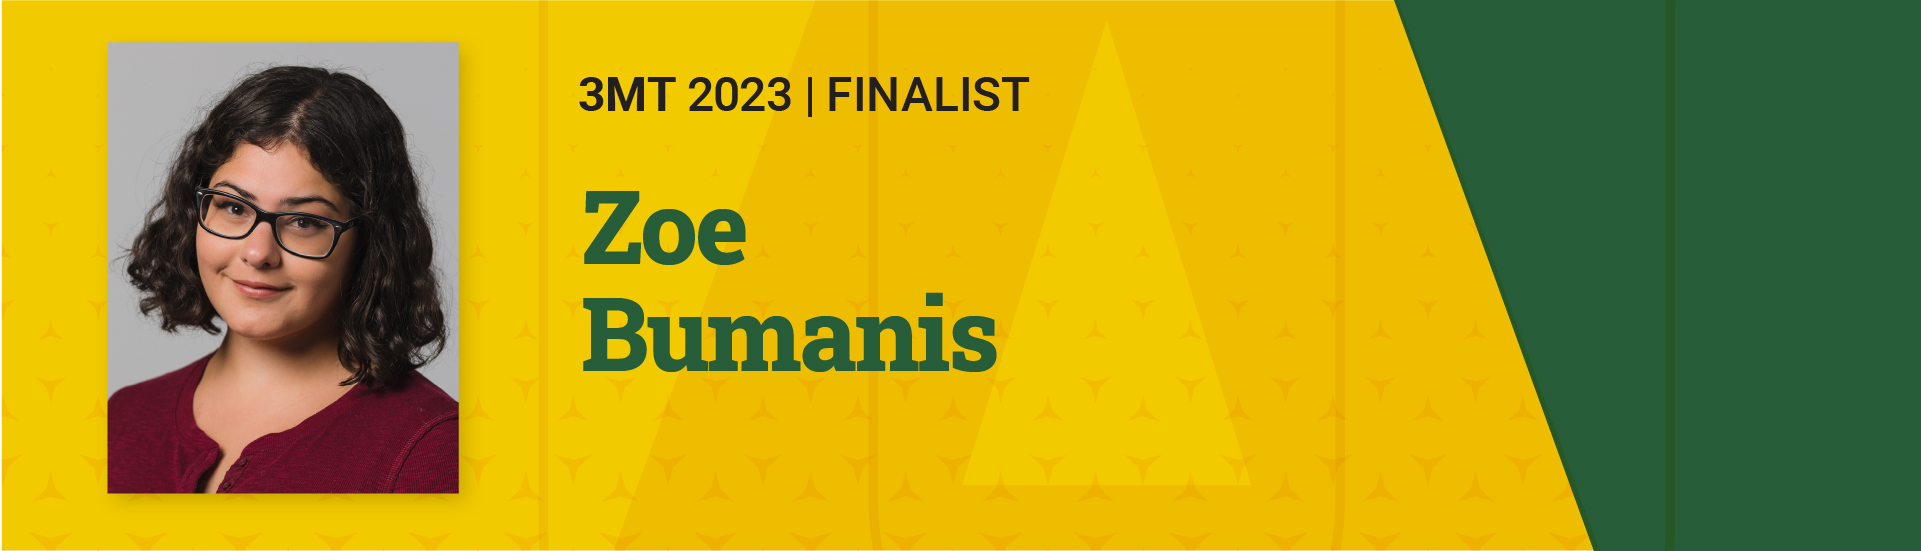 3MT 2023 Finalist  Zoe Bumanis 